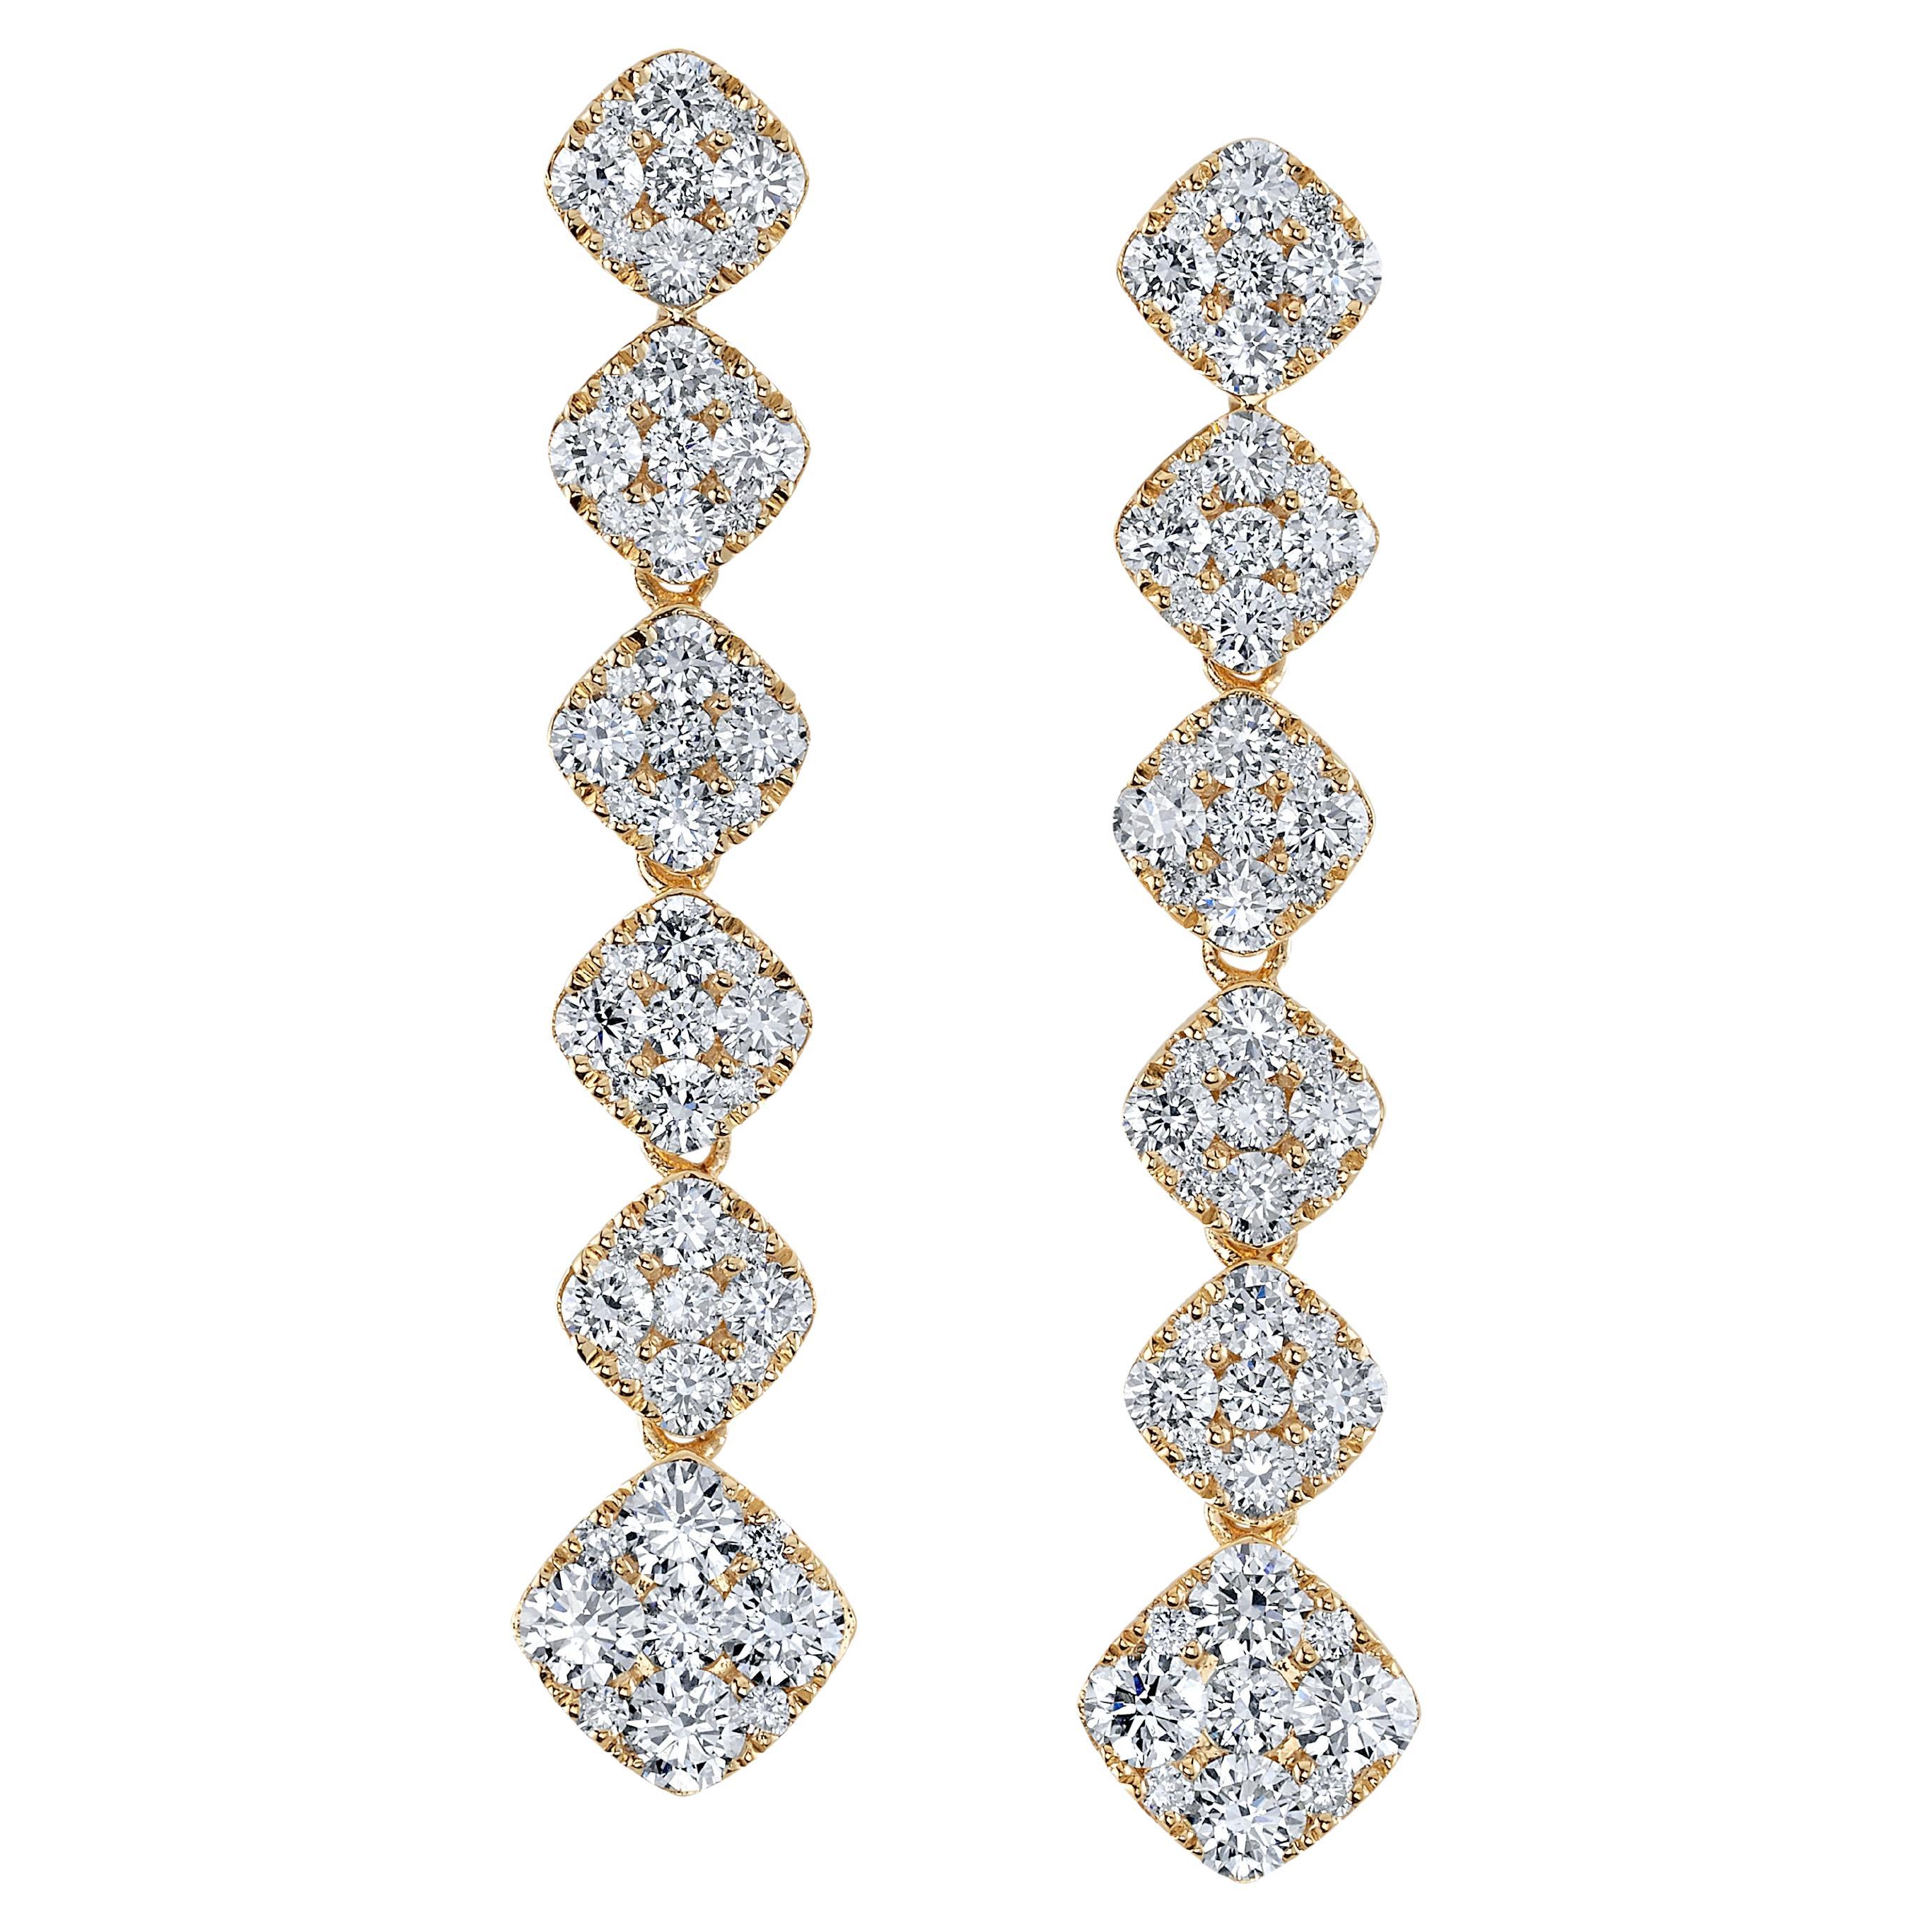 Boucles d'oreilles pendantes en or jaune et pavé de diamants d'une valeur totale de 2,49 carats